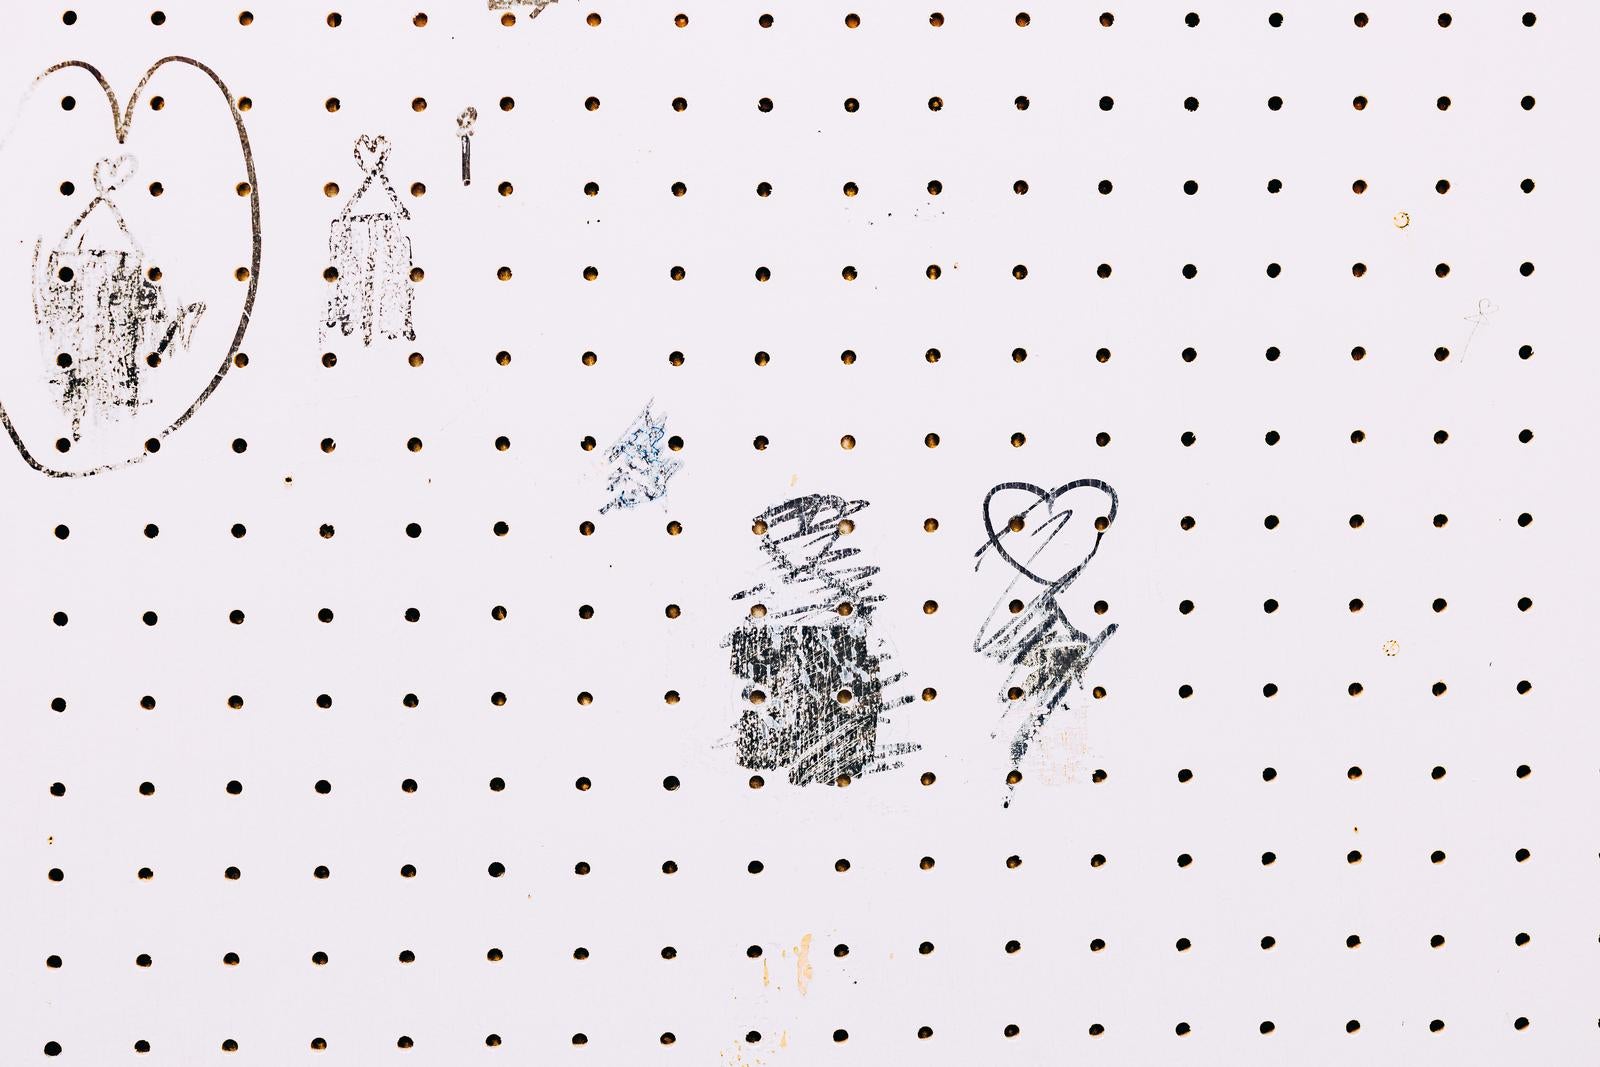 「壁に落書きされた相合い傘の数々」の写真